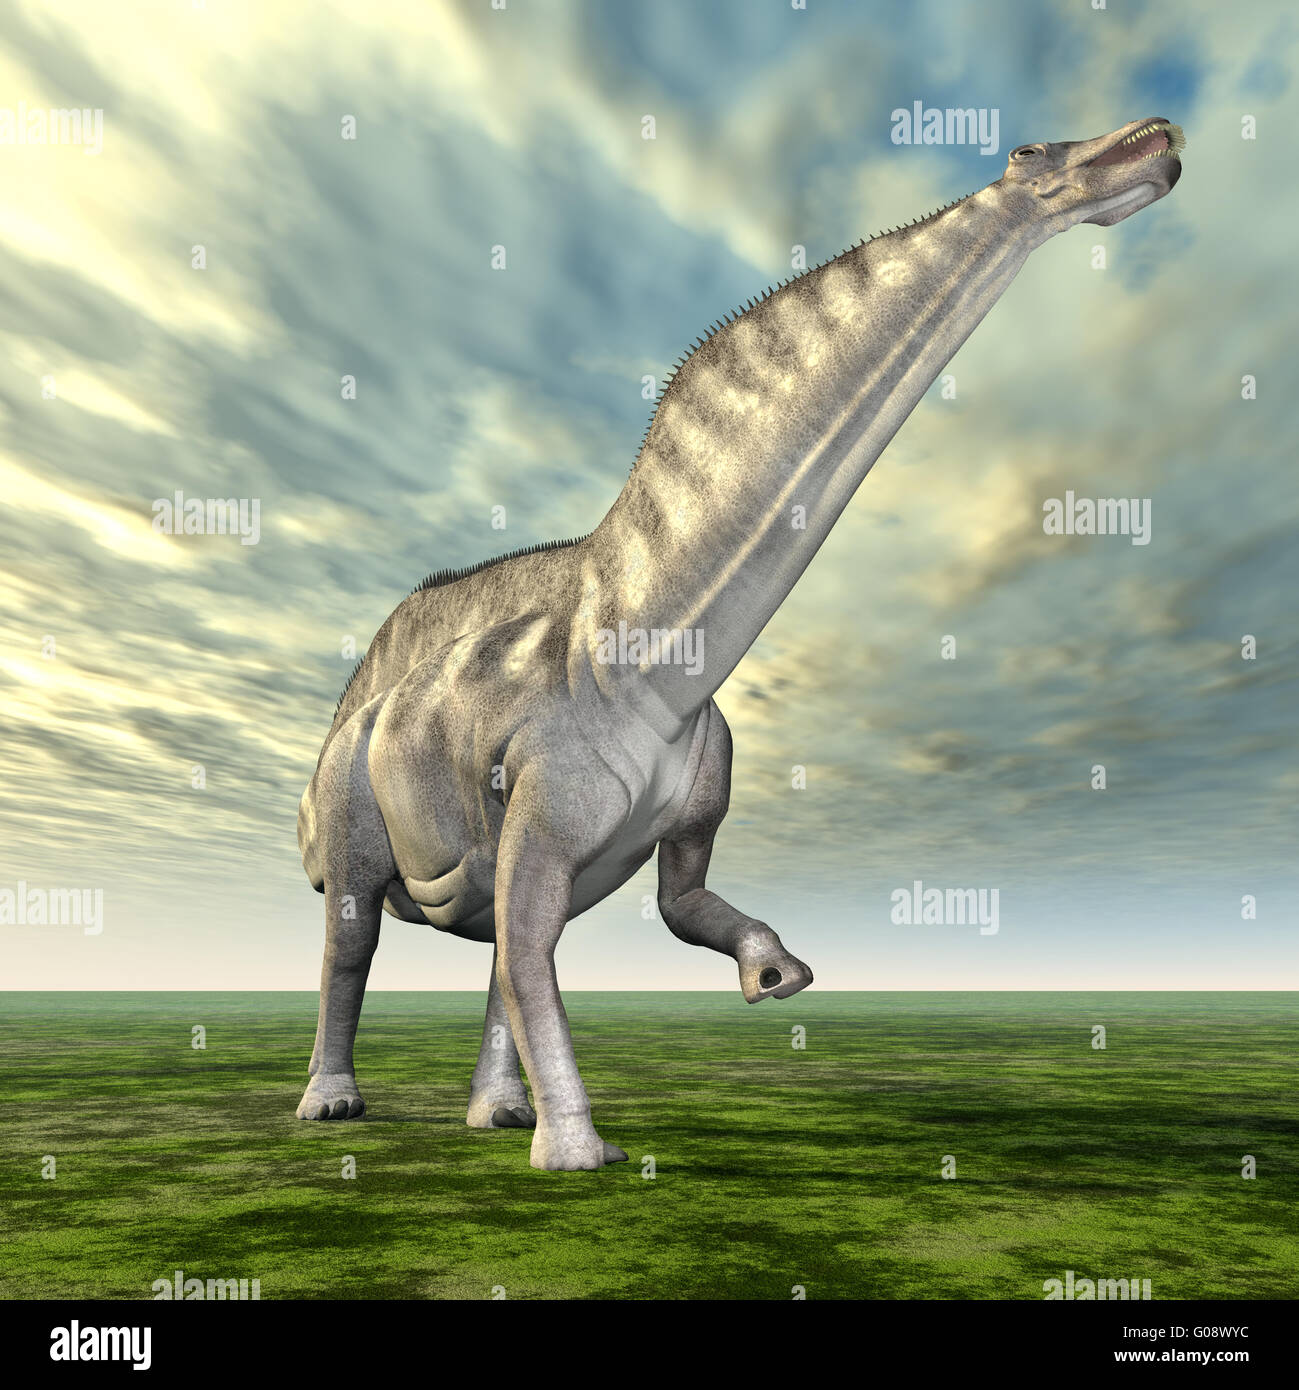 amargasaurus vs giganotosaurus